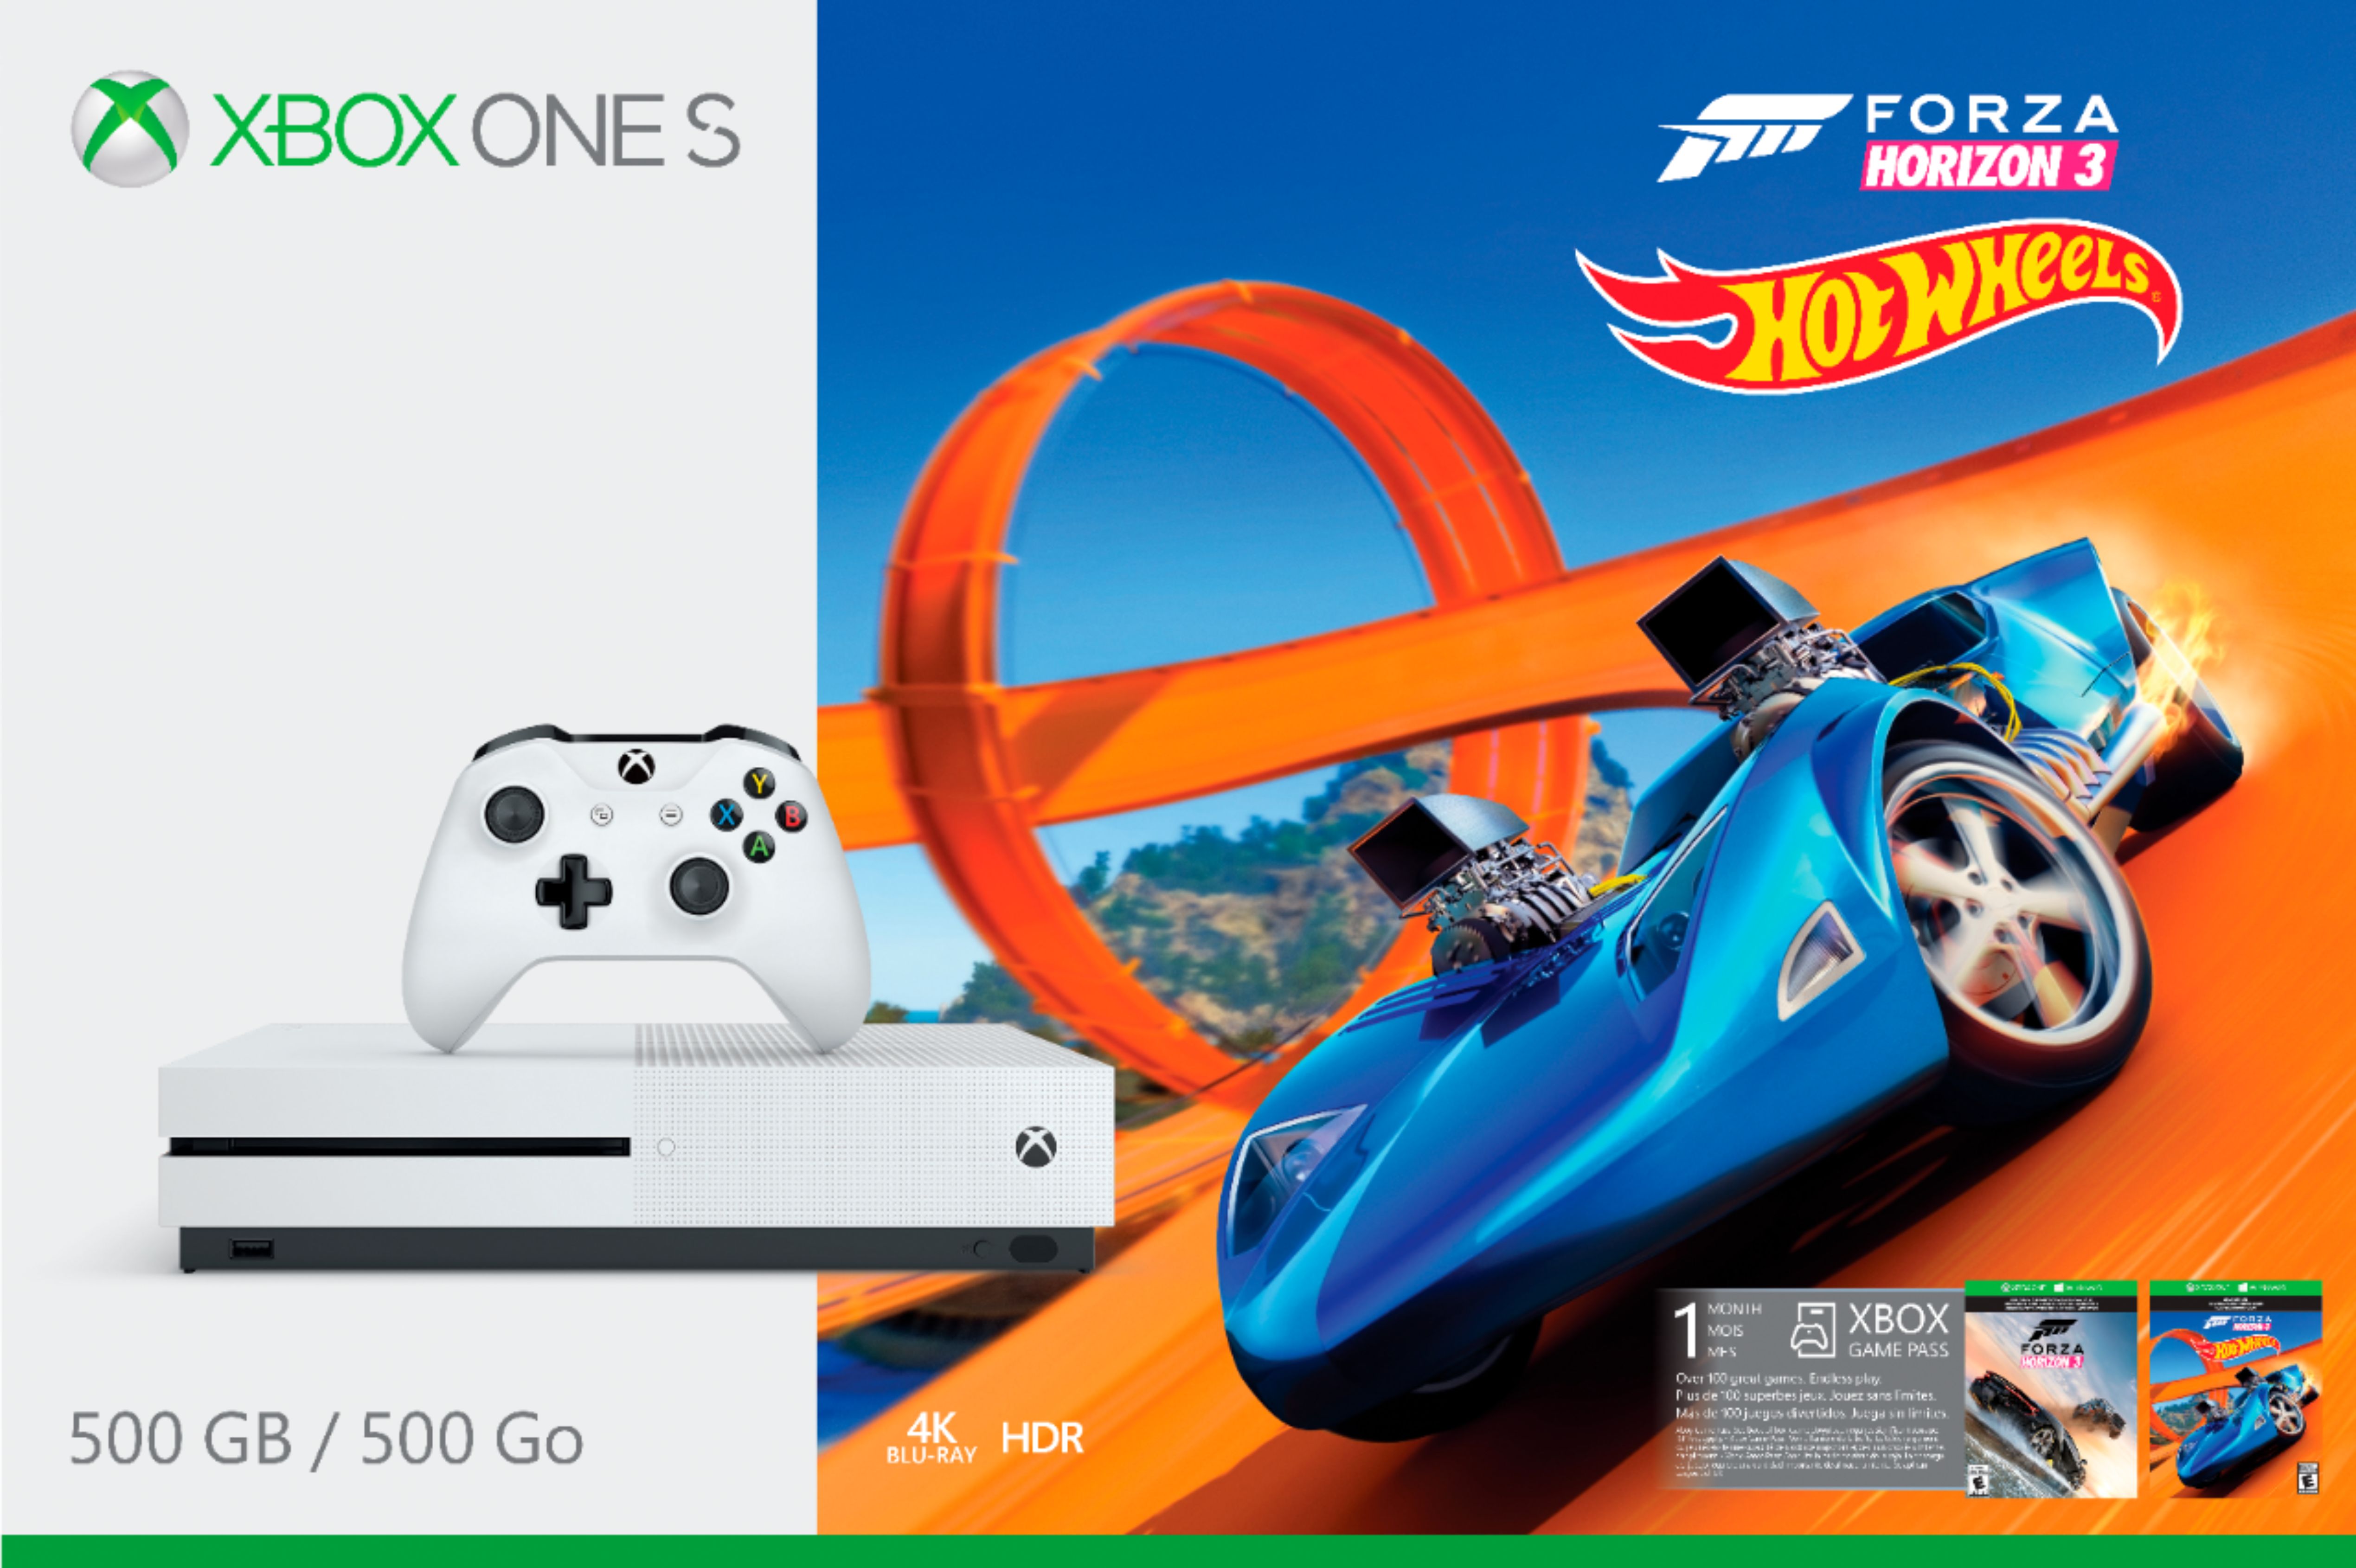 Buy Forza Horizon 3 + Hot Wheels Xbox key! Cheap price